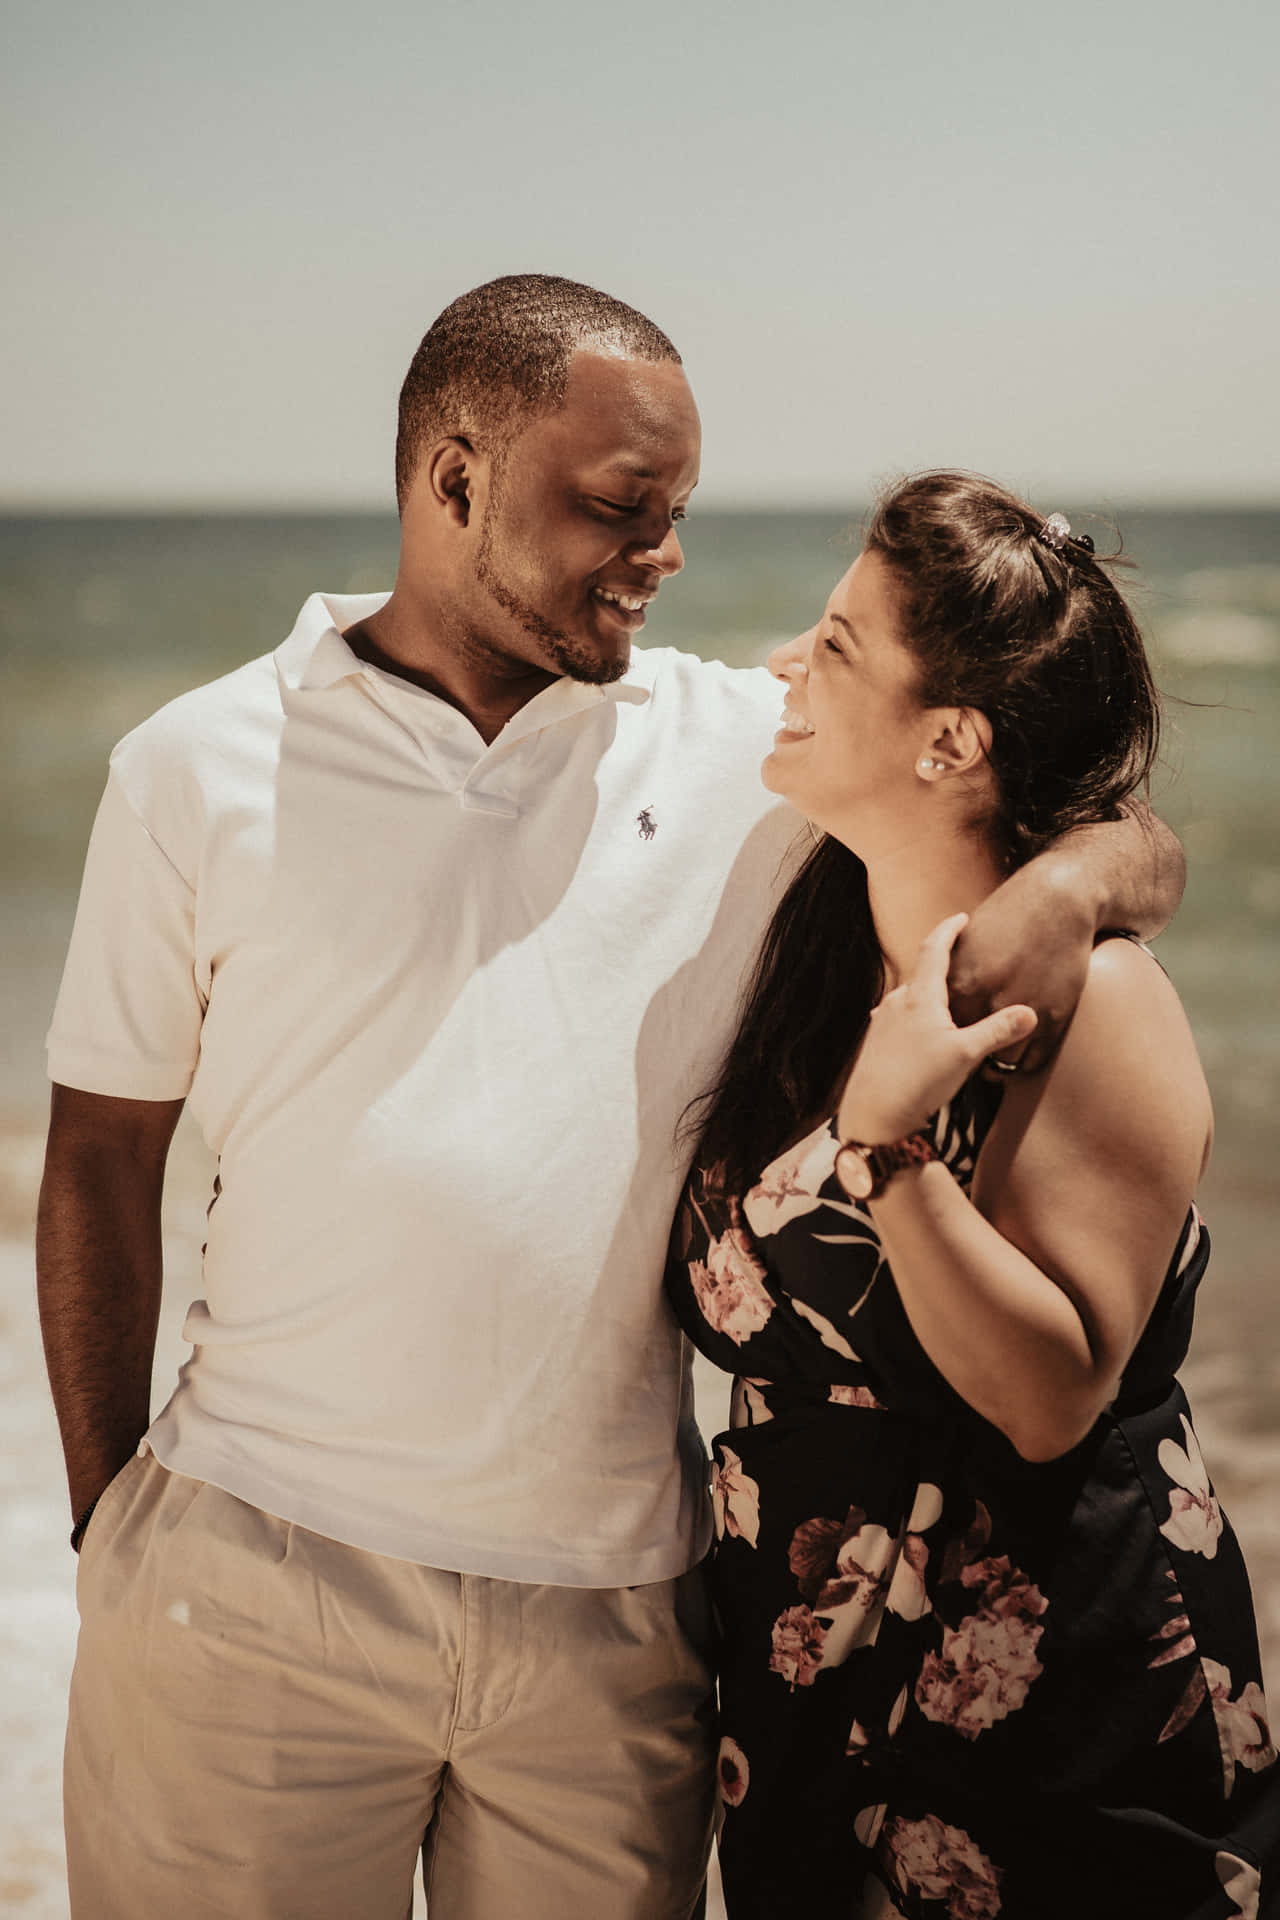 Interracial Couple Beach Photo Wallpaper